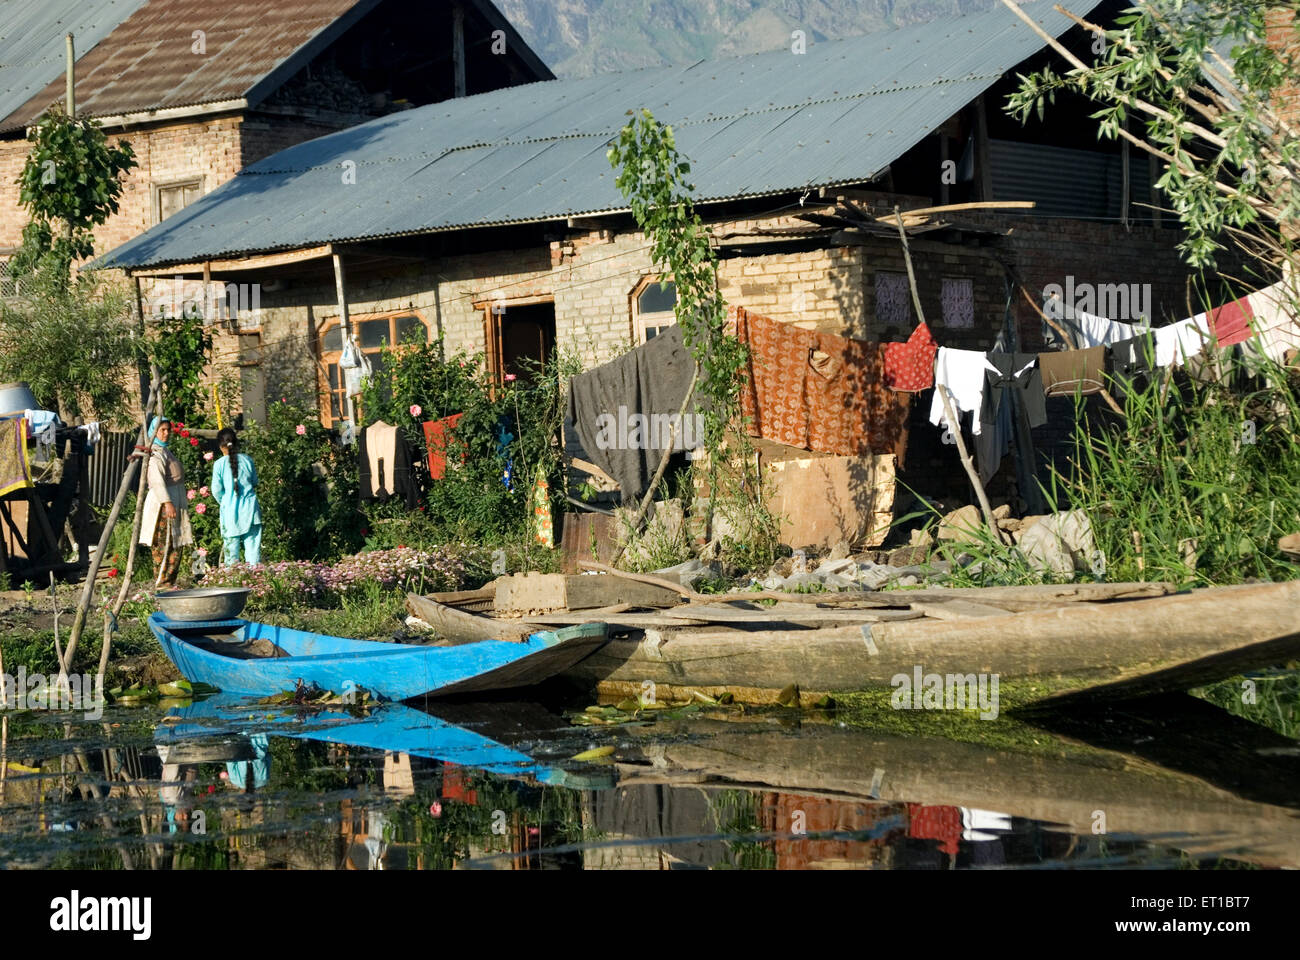 Frauen in der Nähe von hölzernen Wohnhäuser in dal Lake Srinagar Jammu und Kaschmir Indien Asien Stockfoto